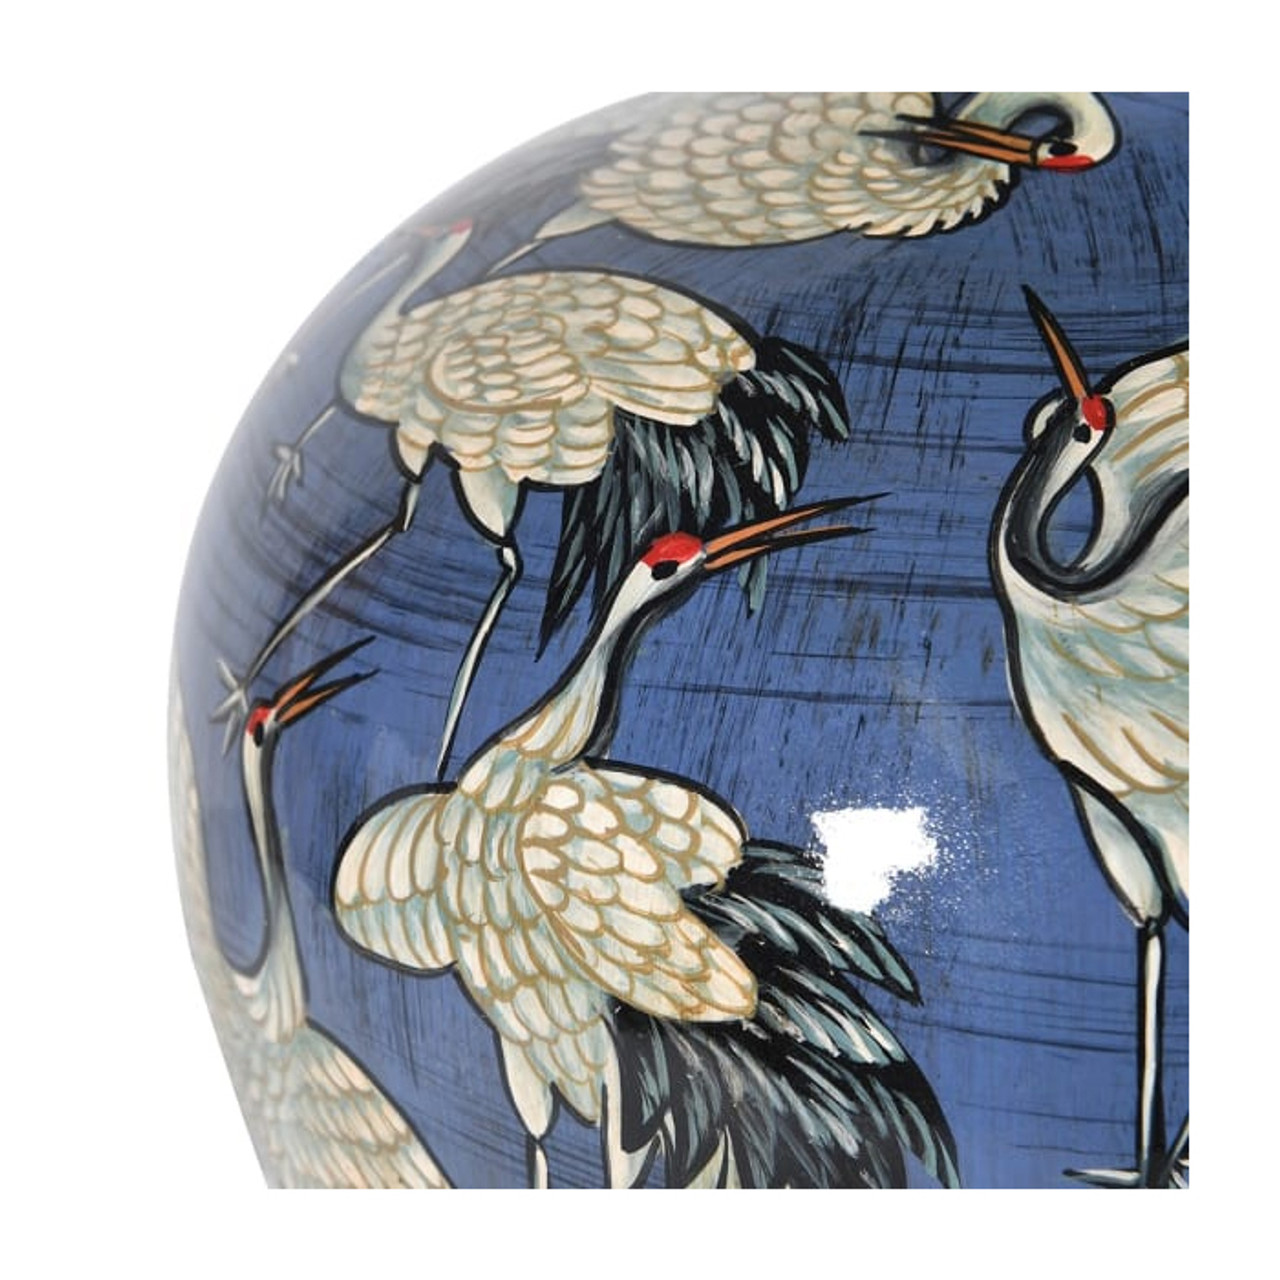 Ceramic Vase with Storks